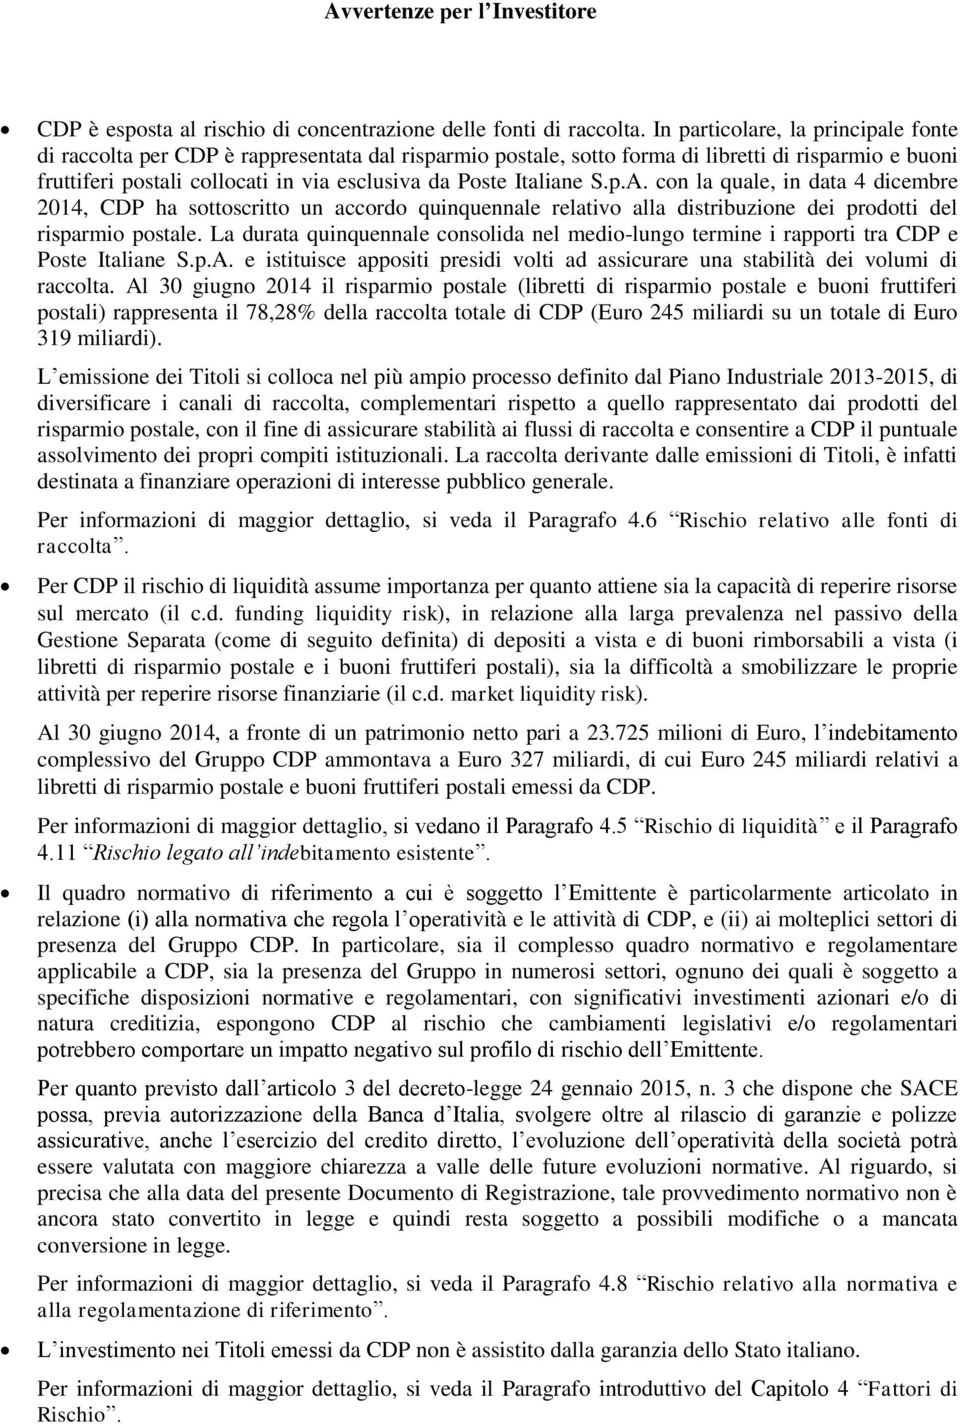 Italiane S.p.A. con la quale, in data 4 dicembre 2014, CDP ha sottoscritto un accordo quinquennale relativo alla distribuzione dei prodotti del risparmio postale.